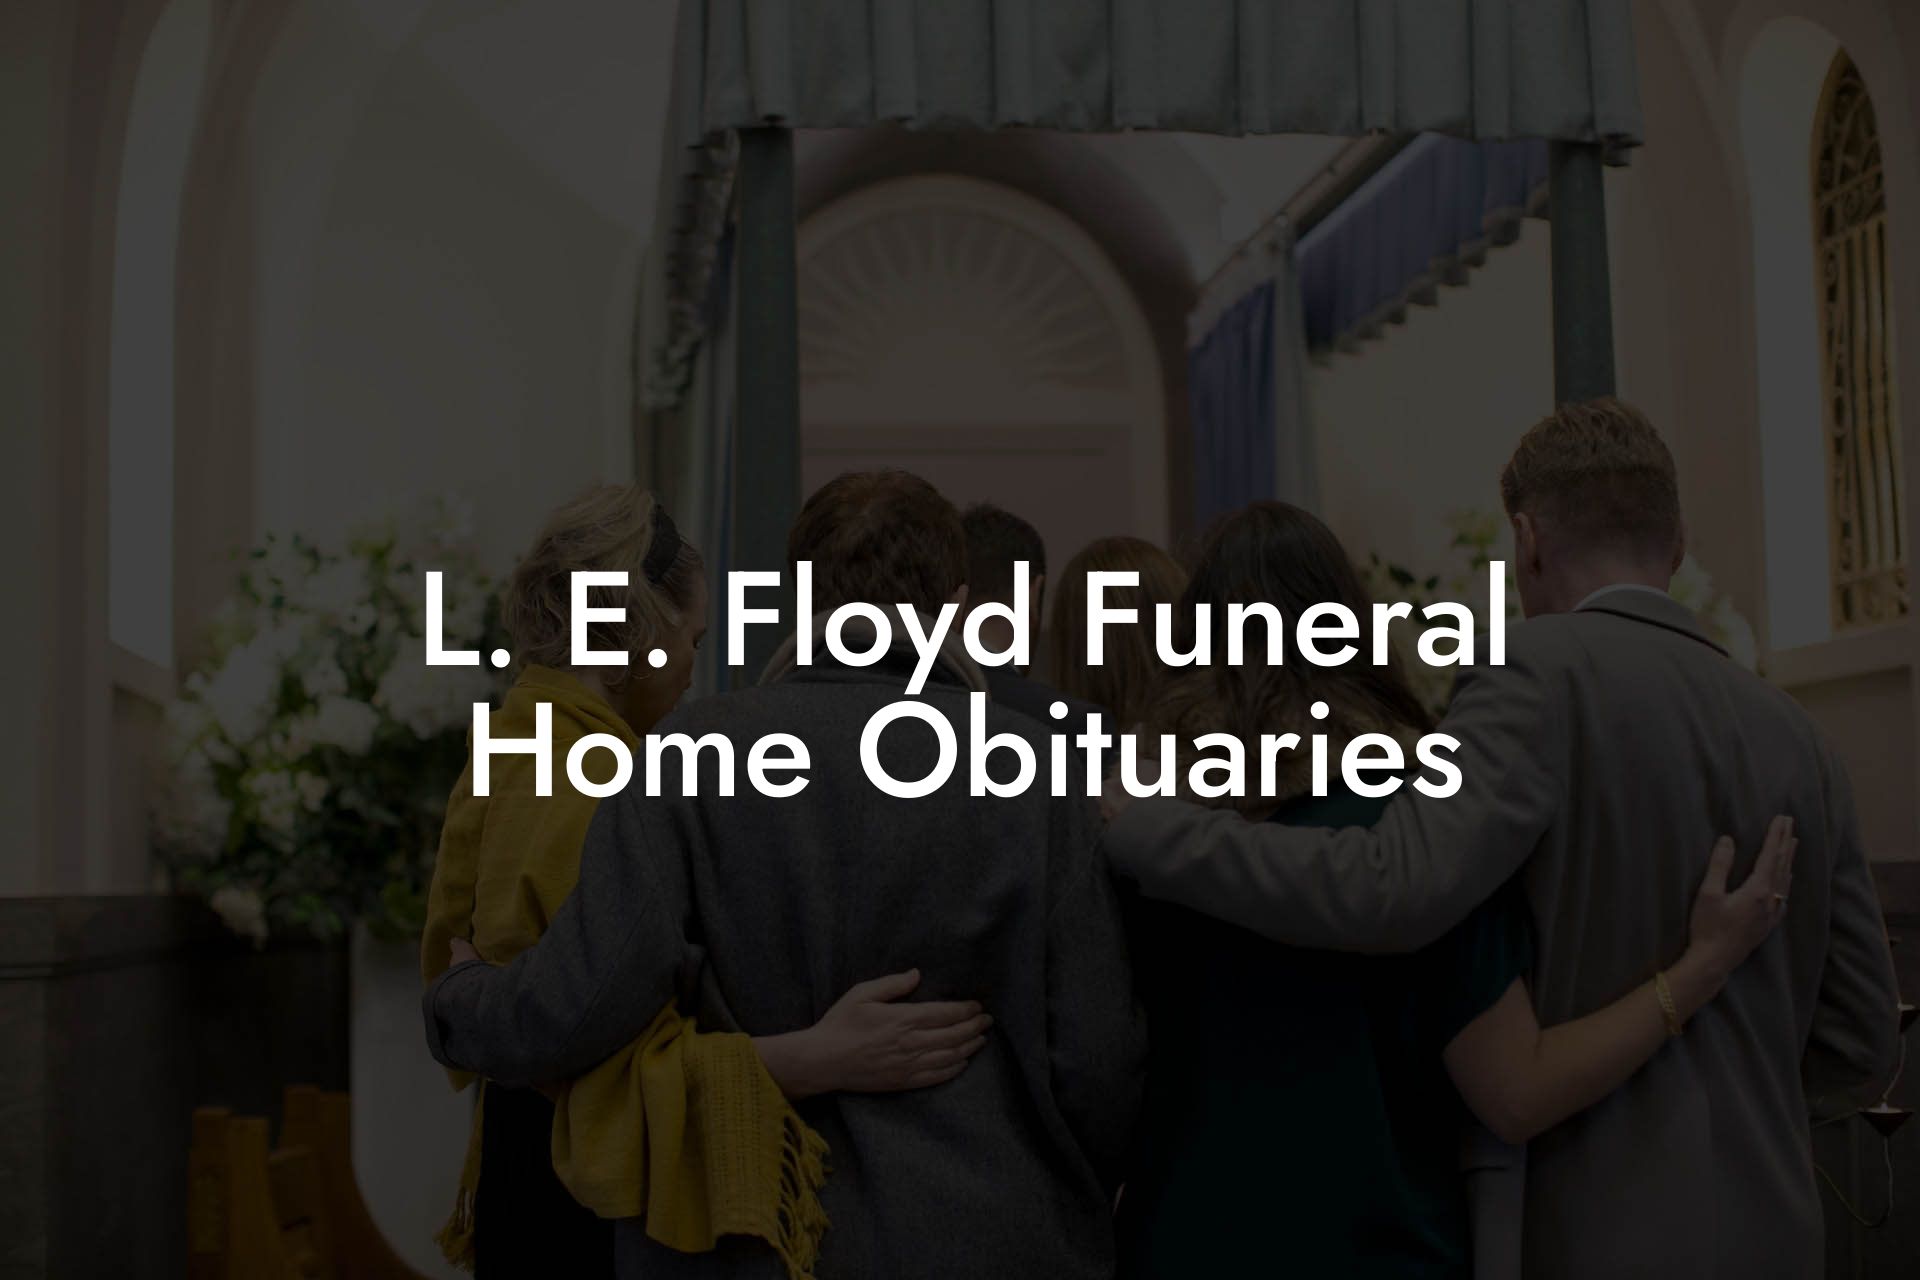 L. E. Floyd Funeral Home Obituaries